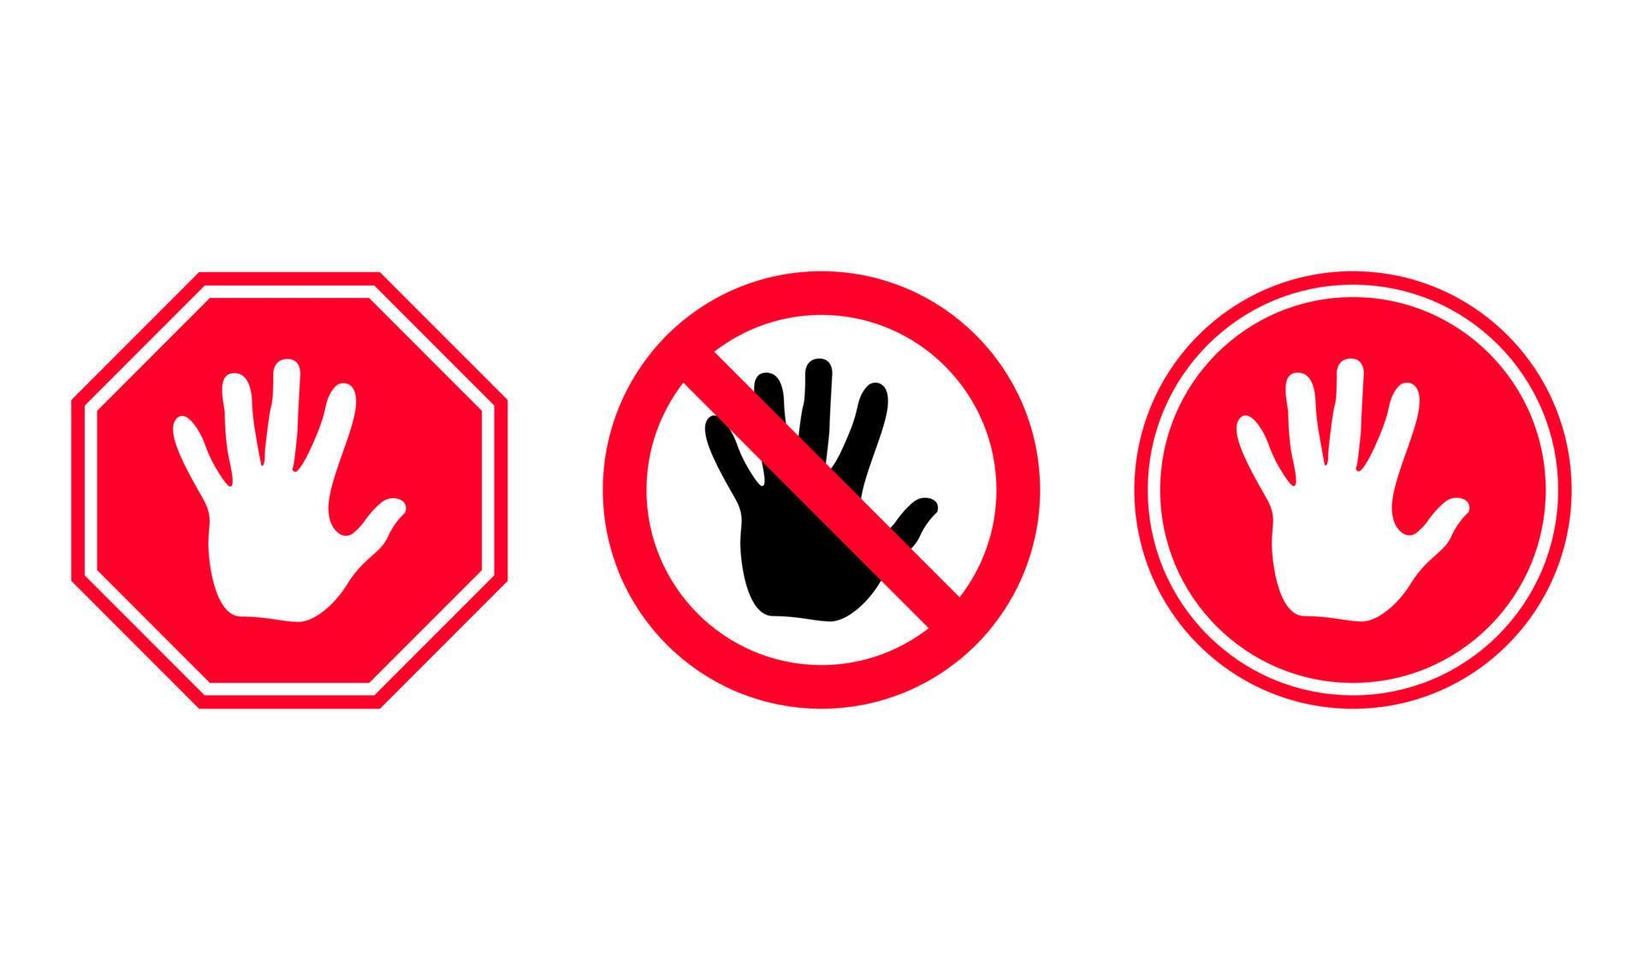 coloque una señal de stop roja simple con un símbolo de mano grande en una señal de tráfico diferente sobre fondo blanco. icono de palma vector